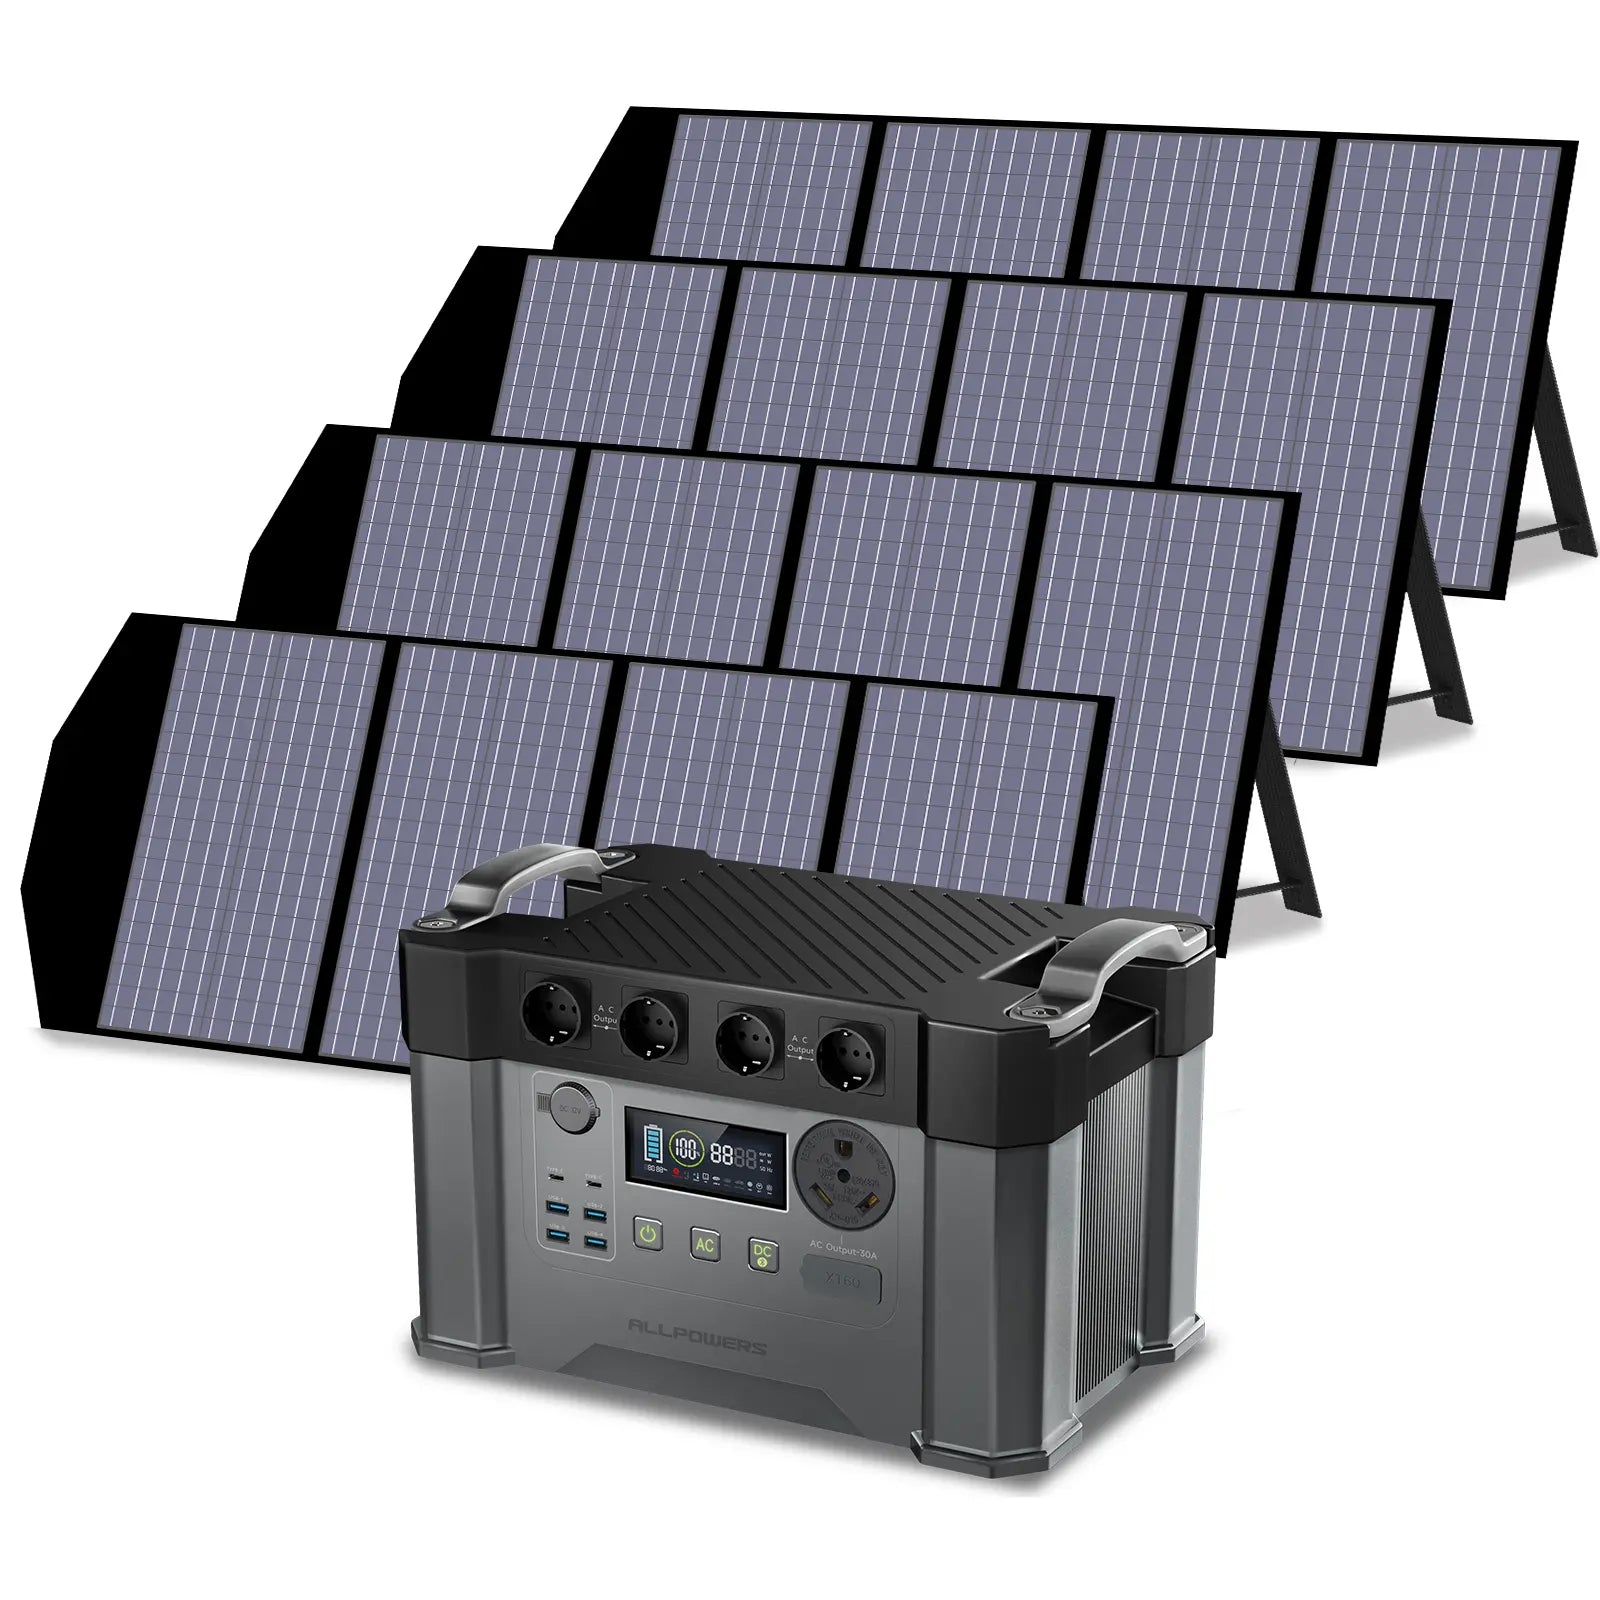 ALLPOWERS 2400W Generatore Solare (S2000 Pro + SP029 140W Pannello Solare)